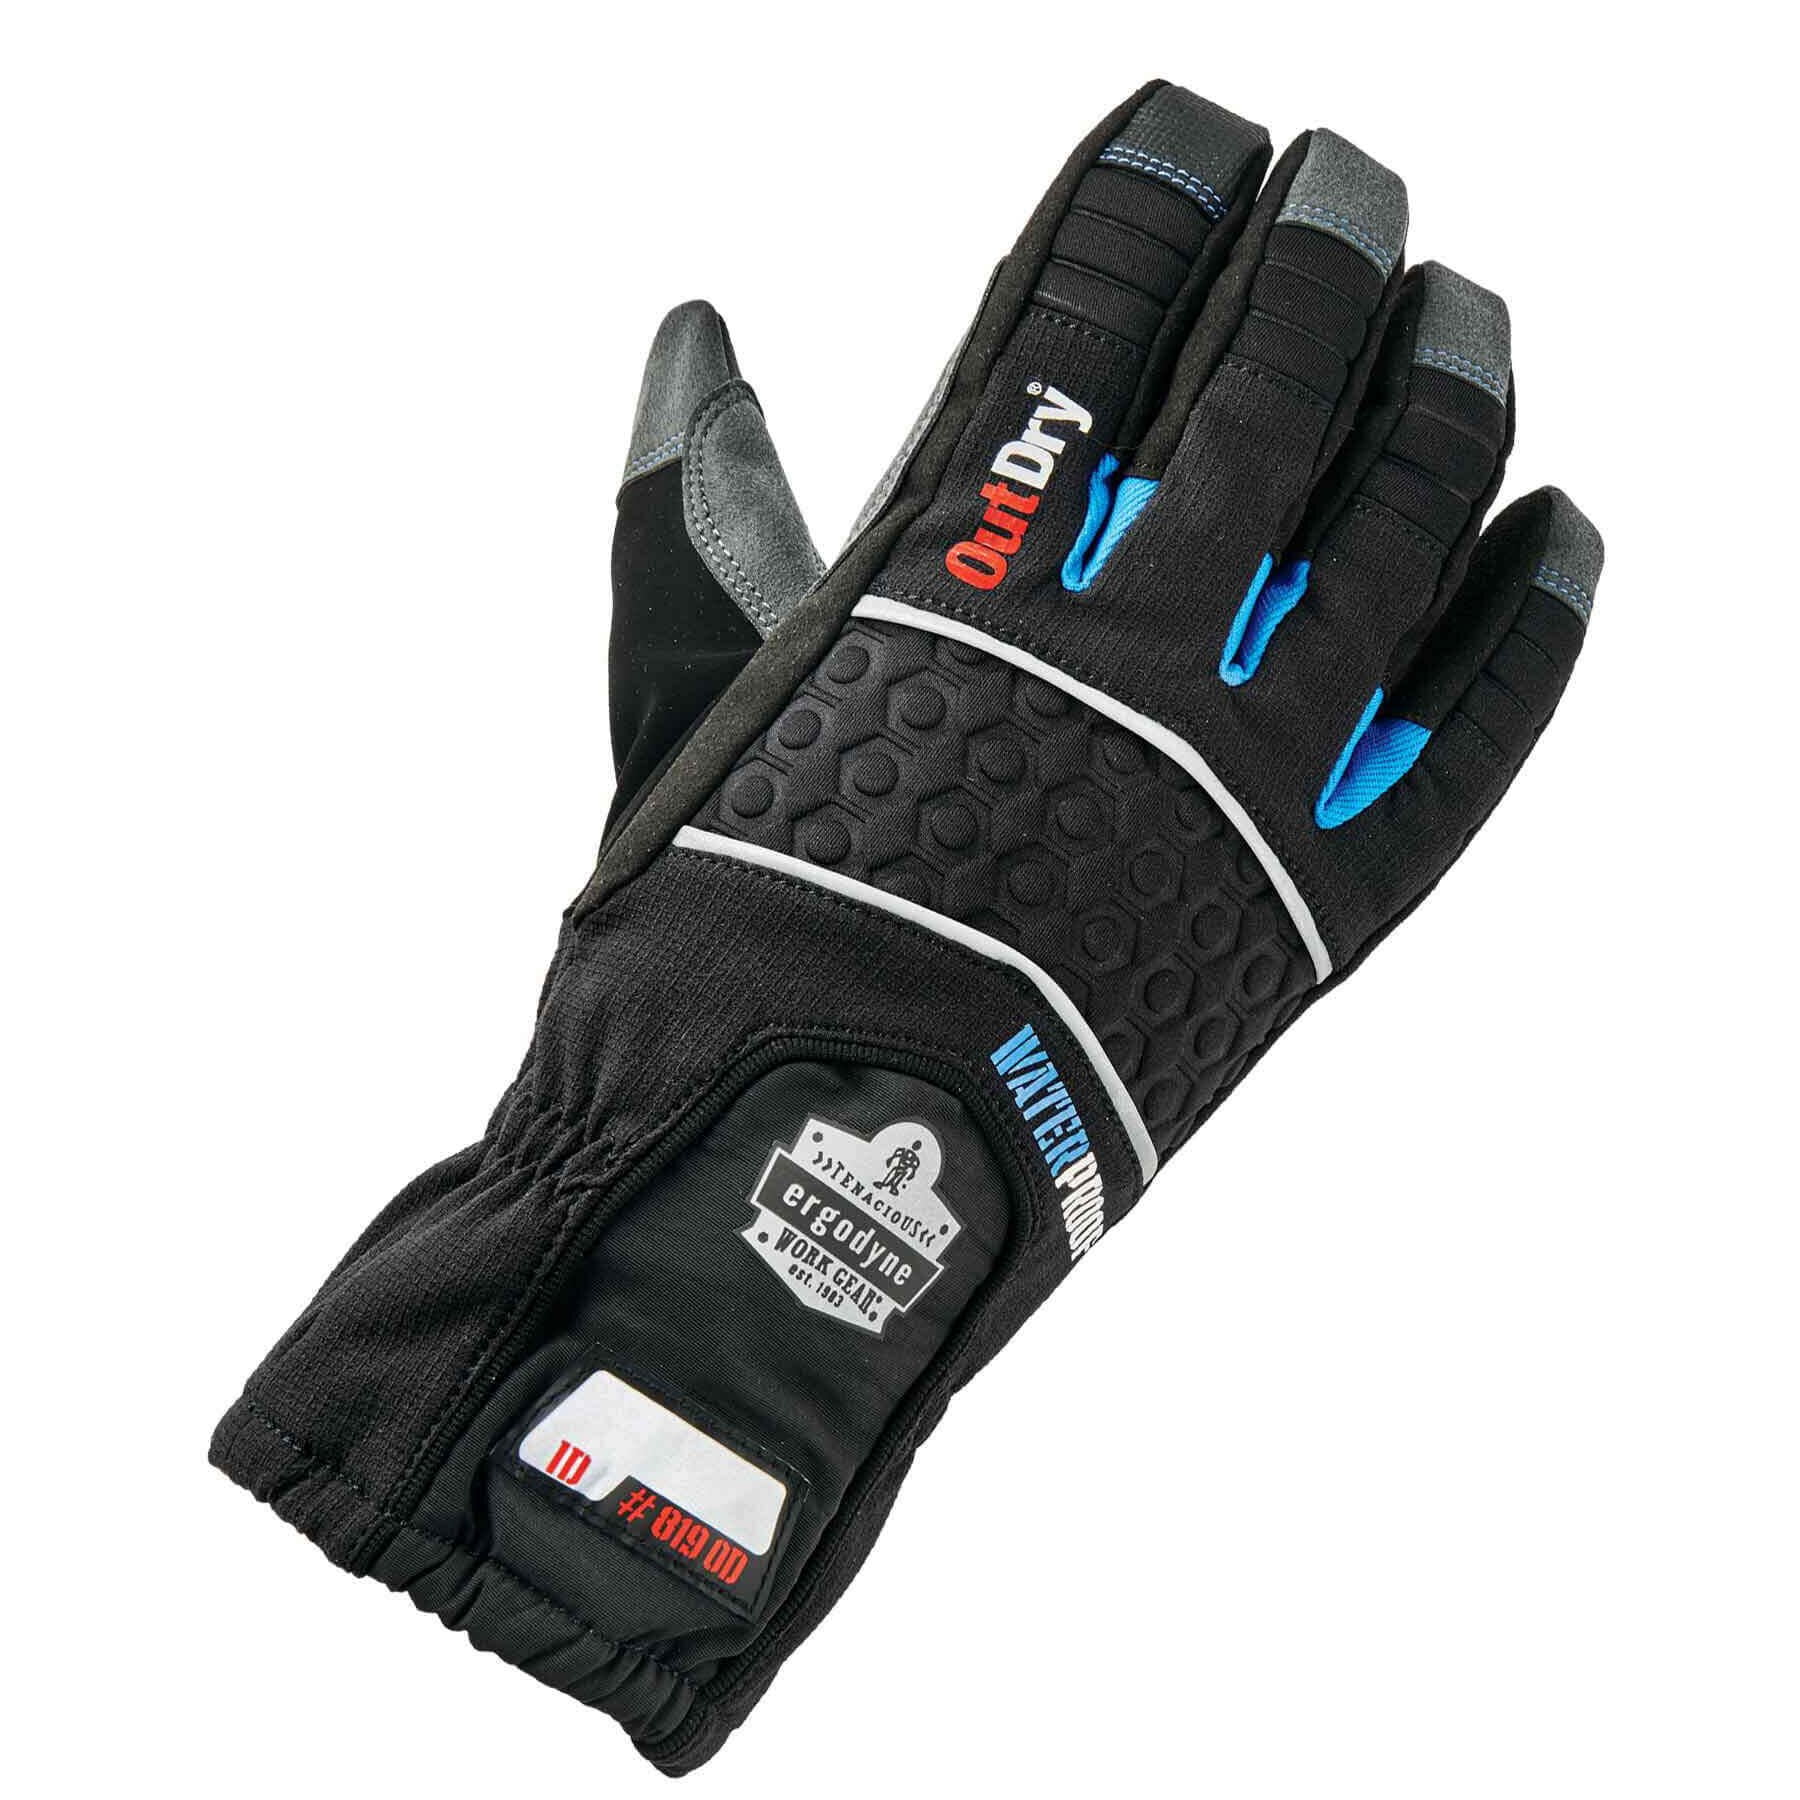 Ergodyne Gloves & Mittens Men's Insulated Waterproof Work & Winter Gloves 2XL